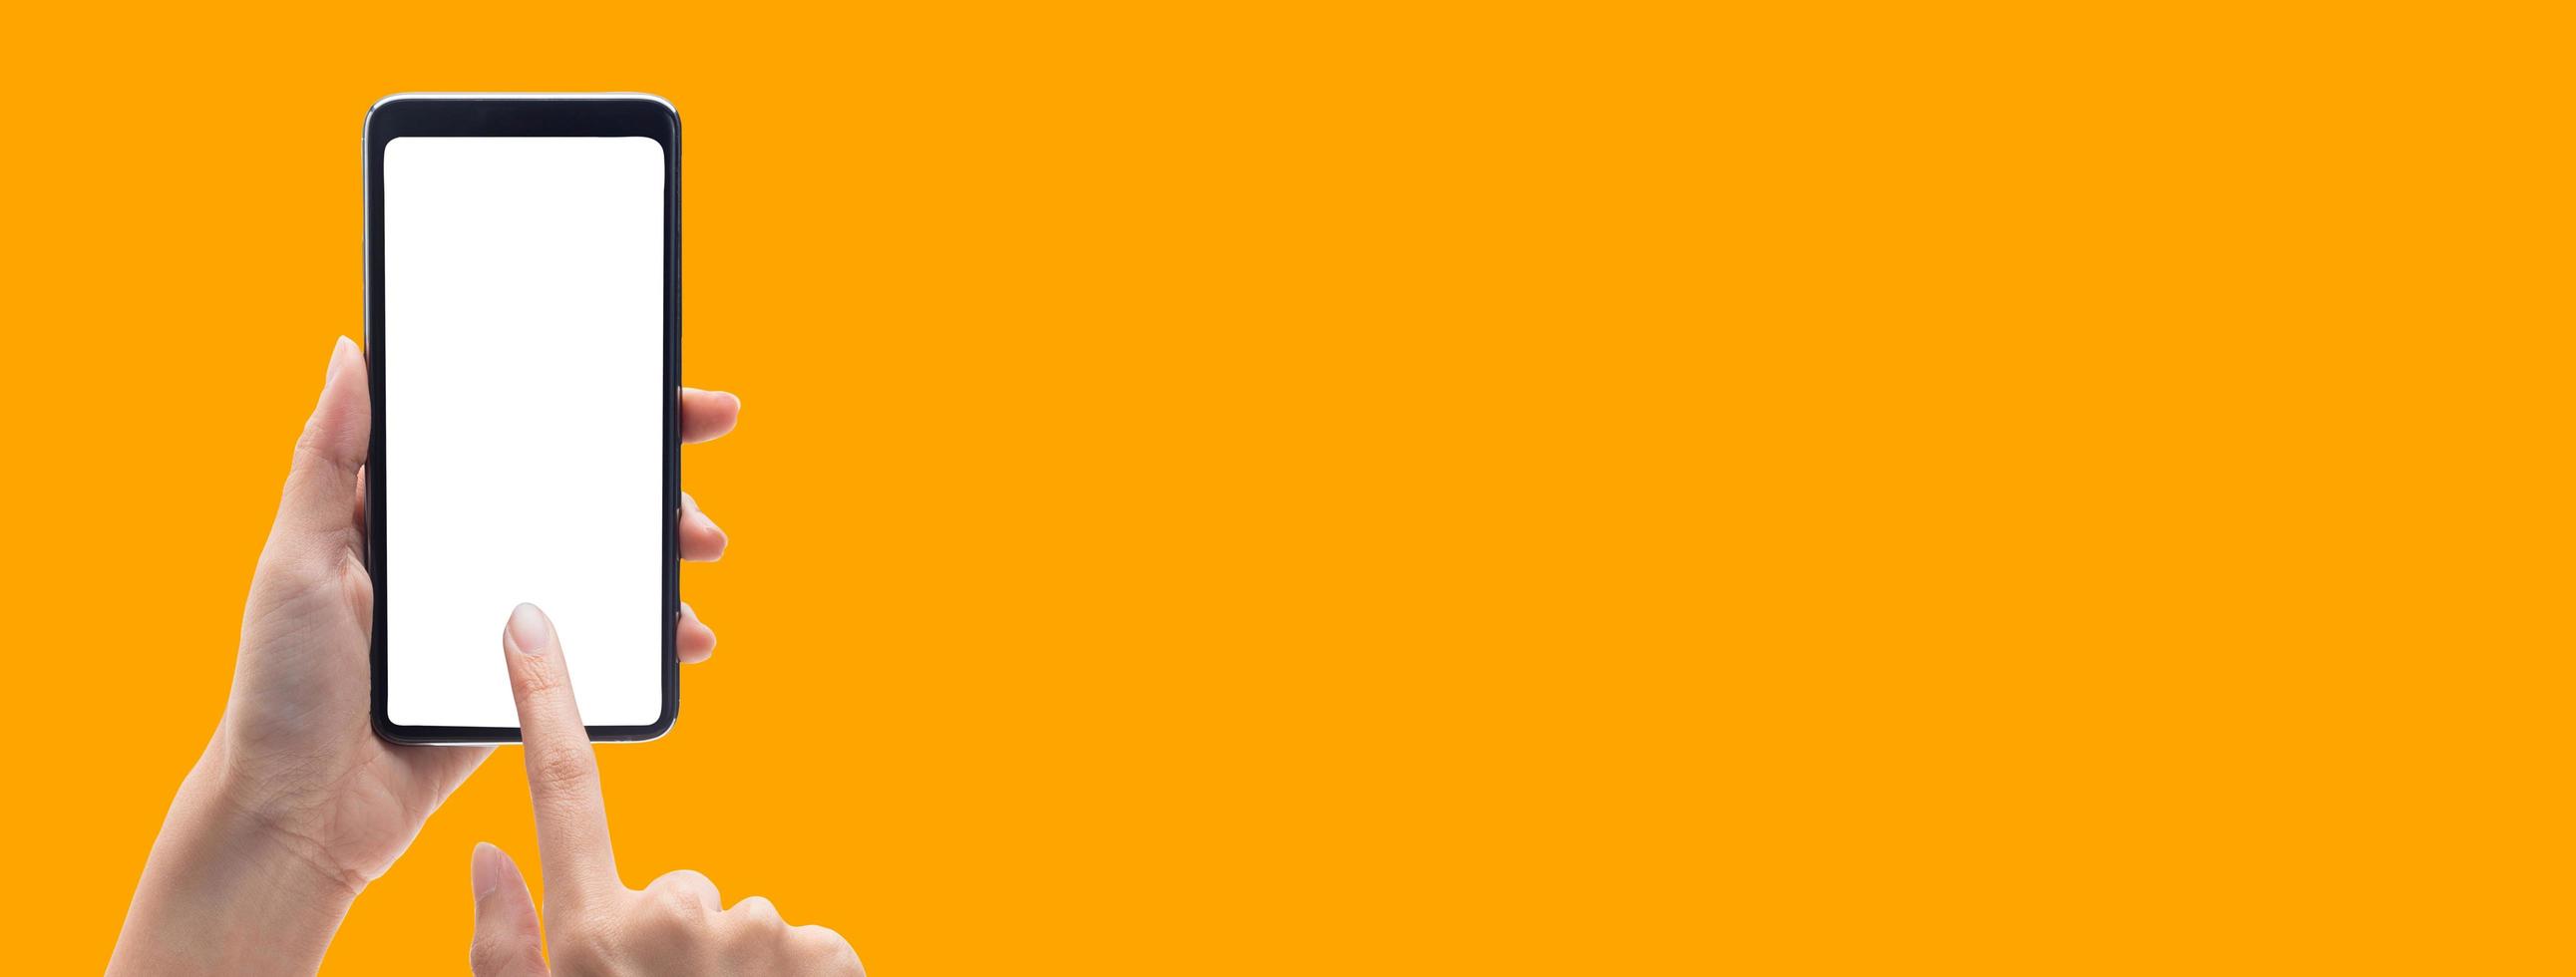 handen die smartphone op oranje bannerachtergrond gebruiken foto